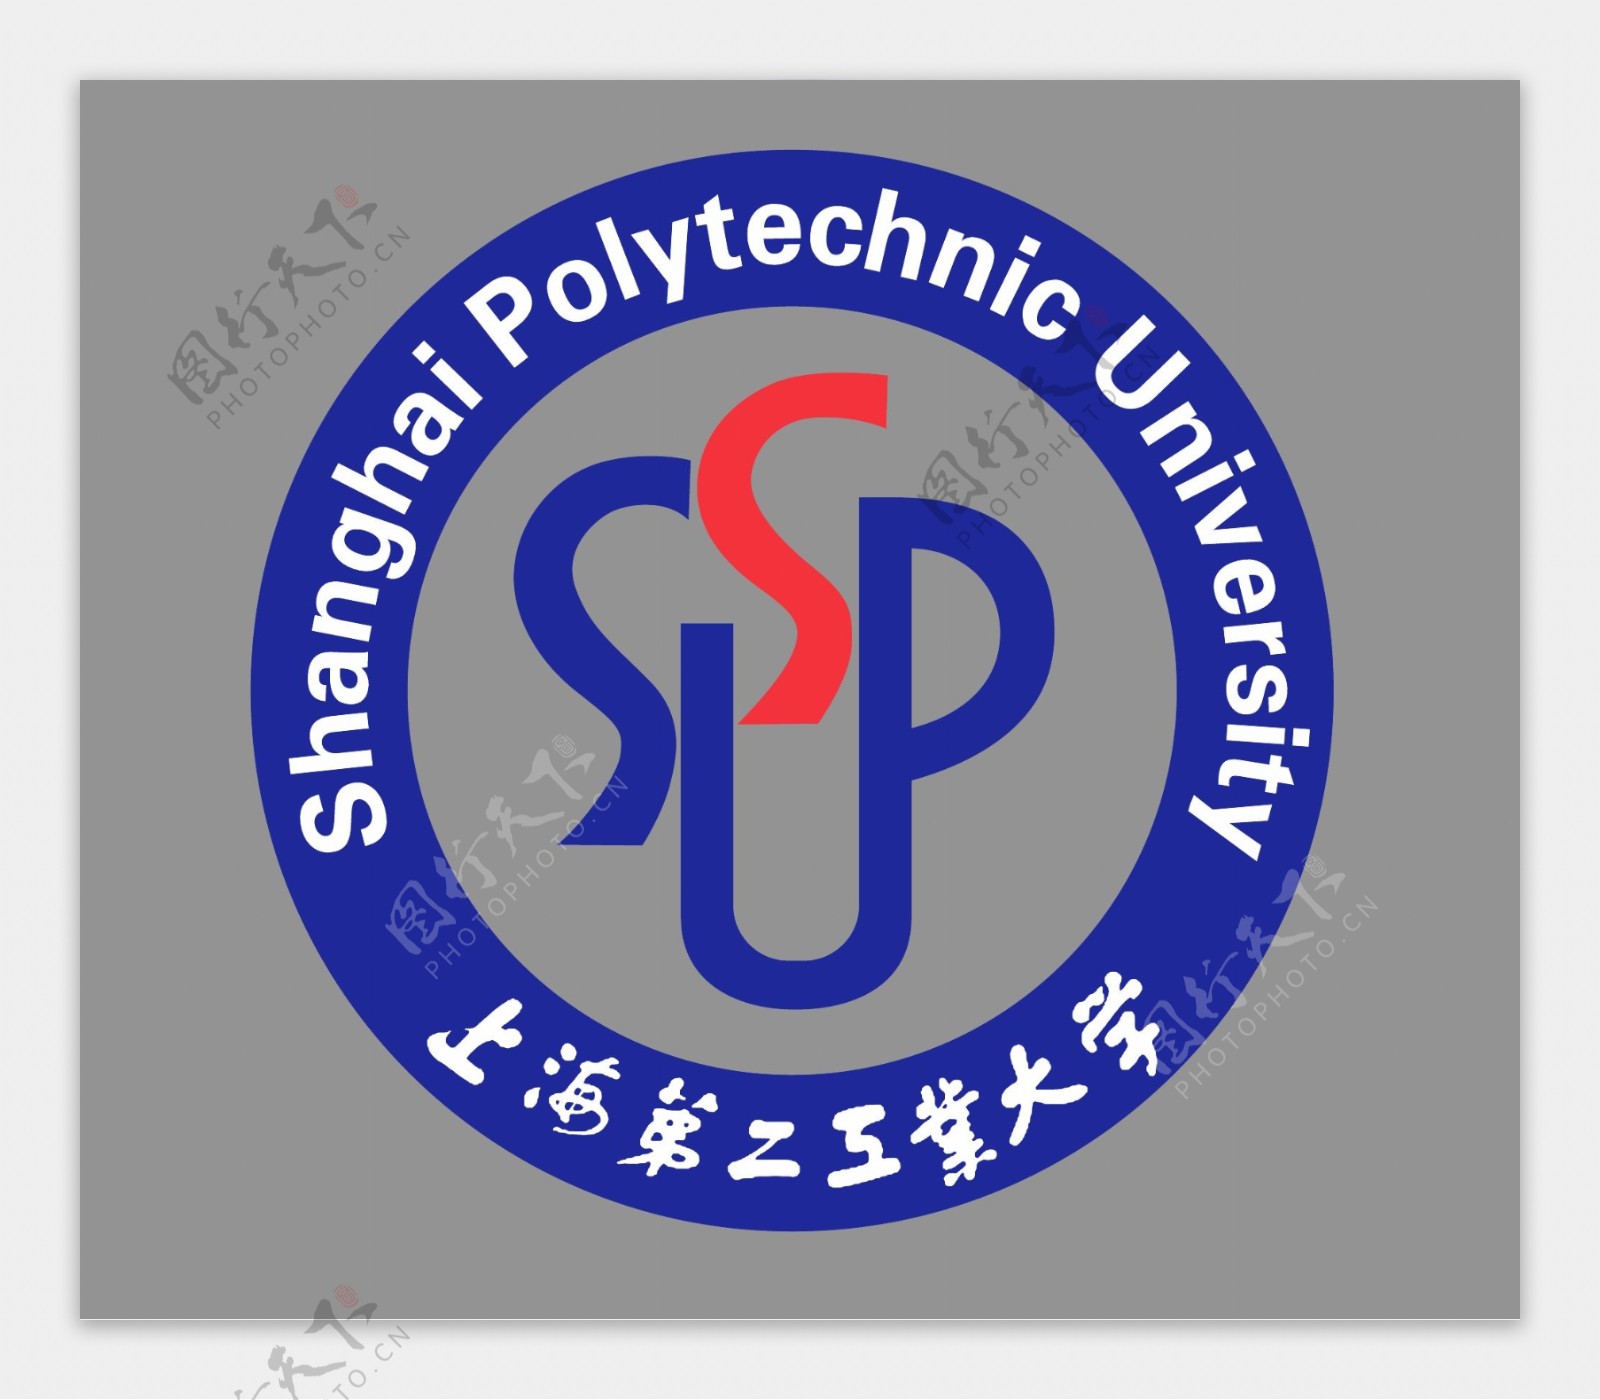 SSUP上海第二工业大学